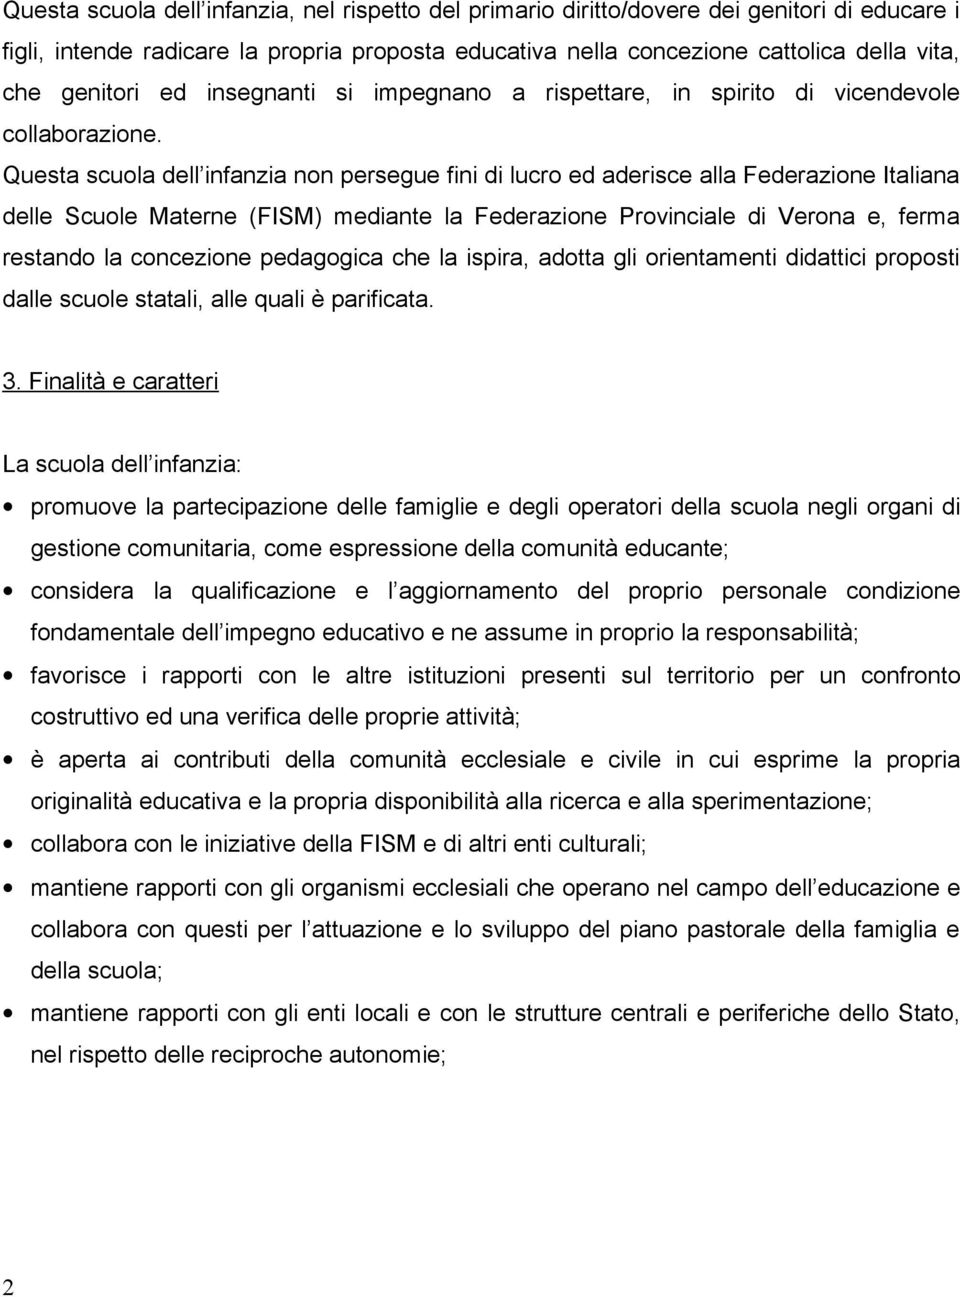 Questa scuola dell infanzia non persegue fini di lucro ed aderisce alla Federazione Italiana delle Scuole Materne (FISM) mediante la Federazione Provinciale di Verona e, ferma restando la concezione